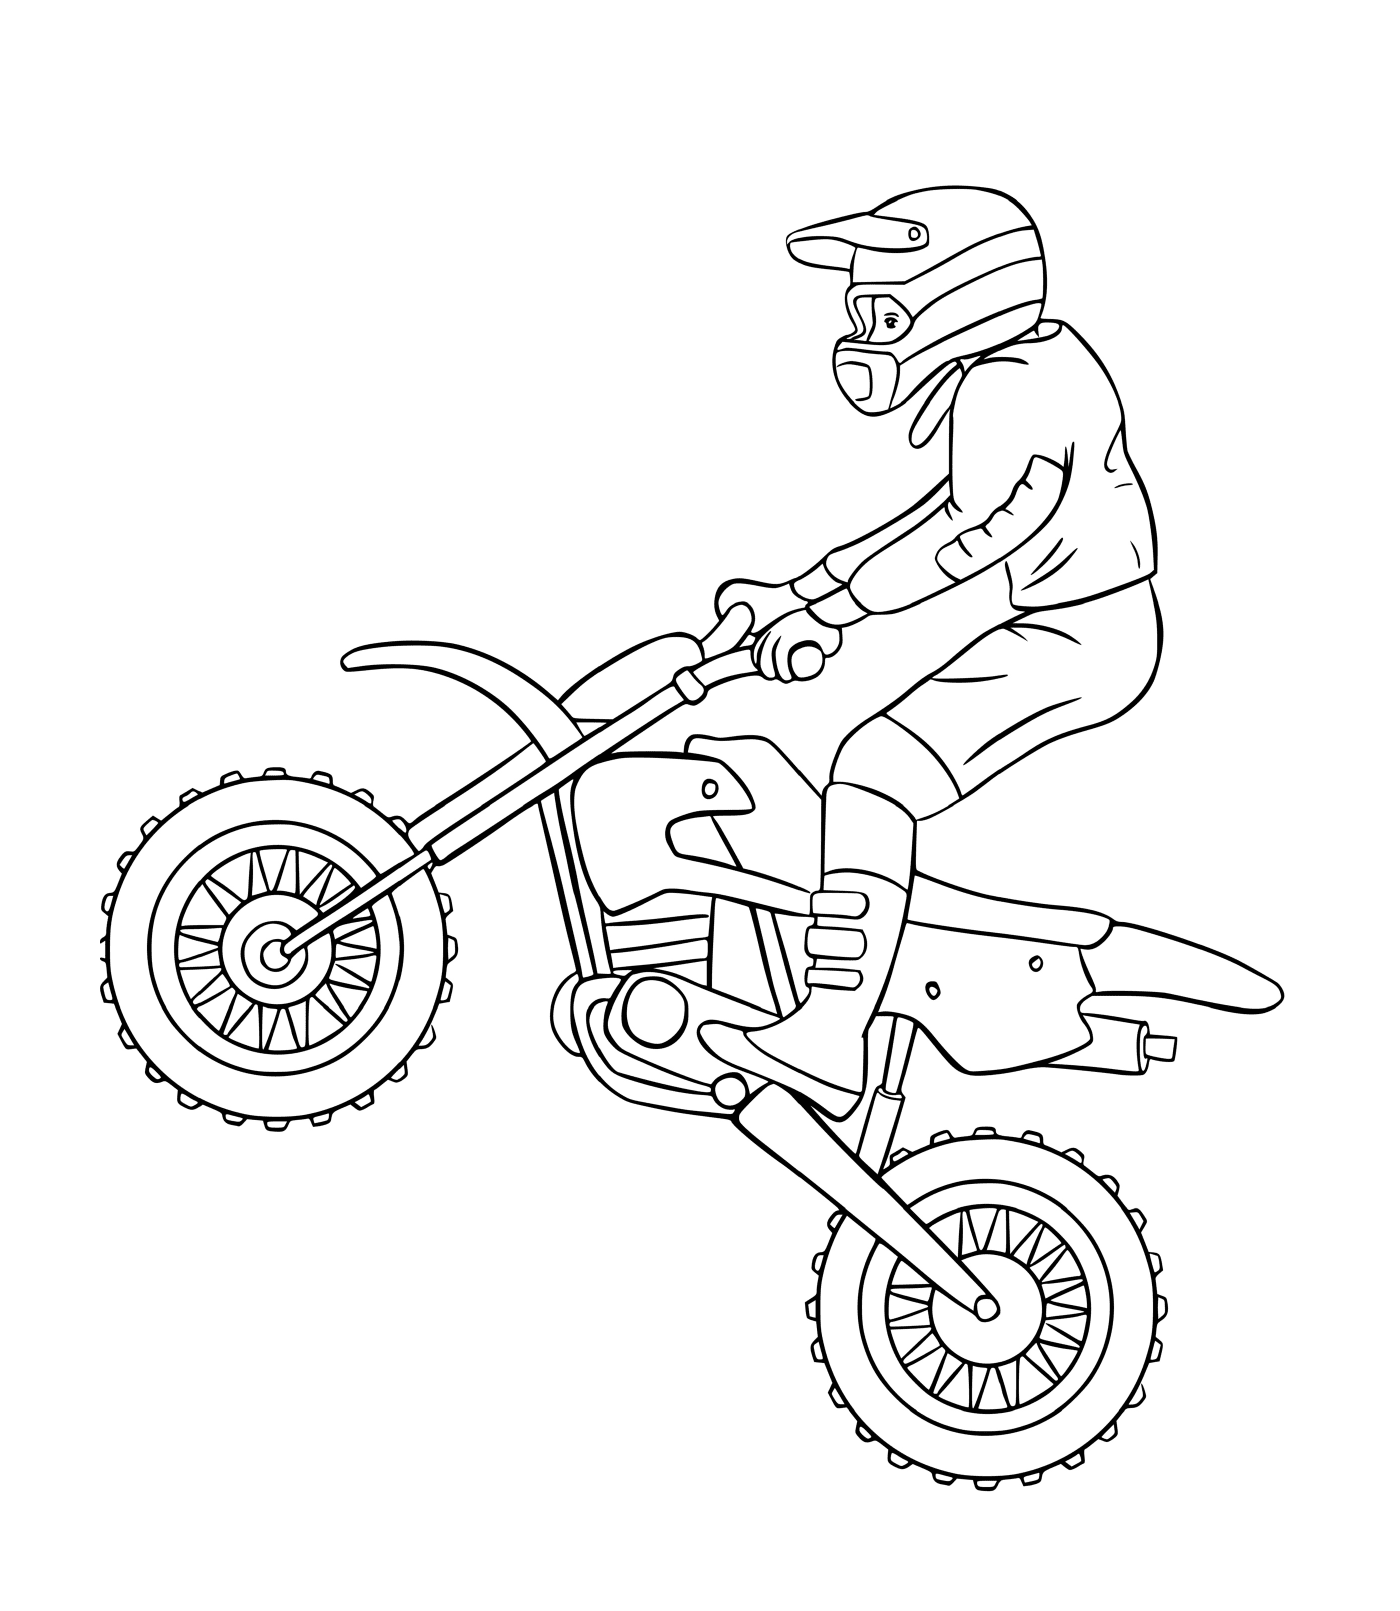  骑摩托车的男子 